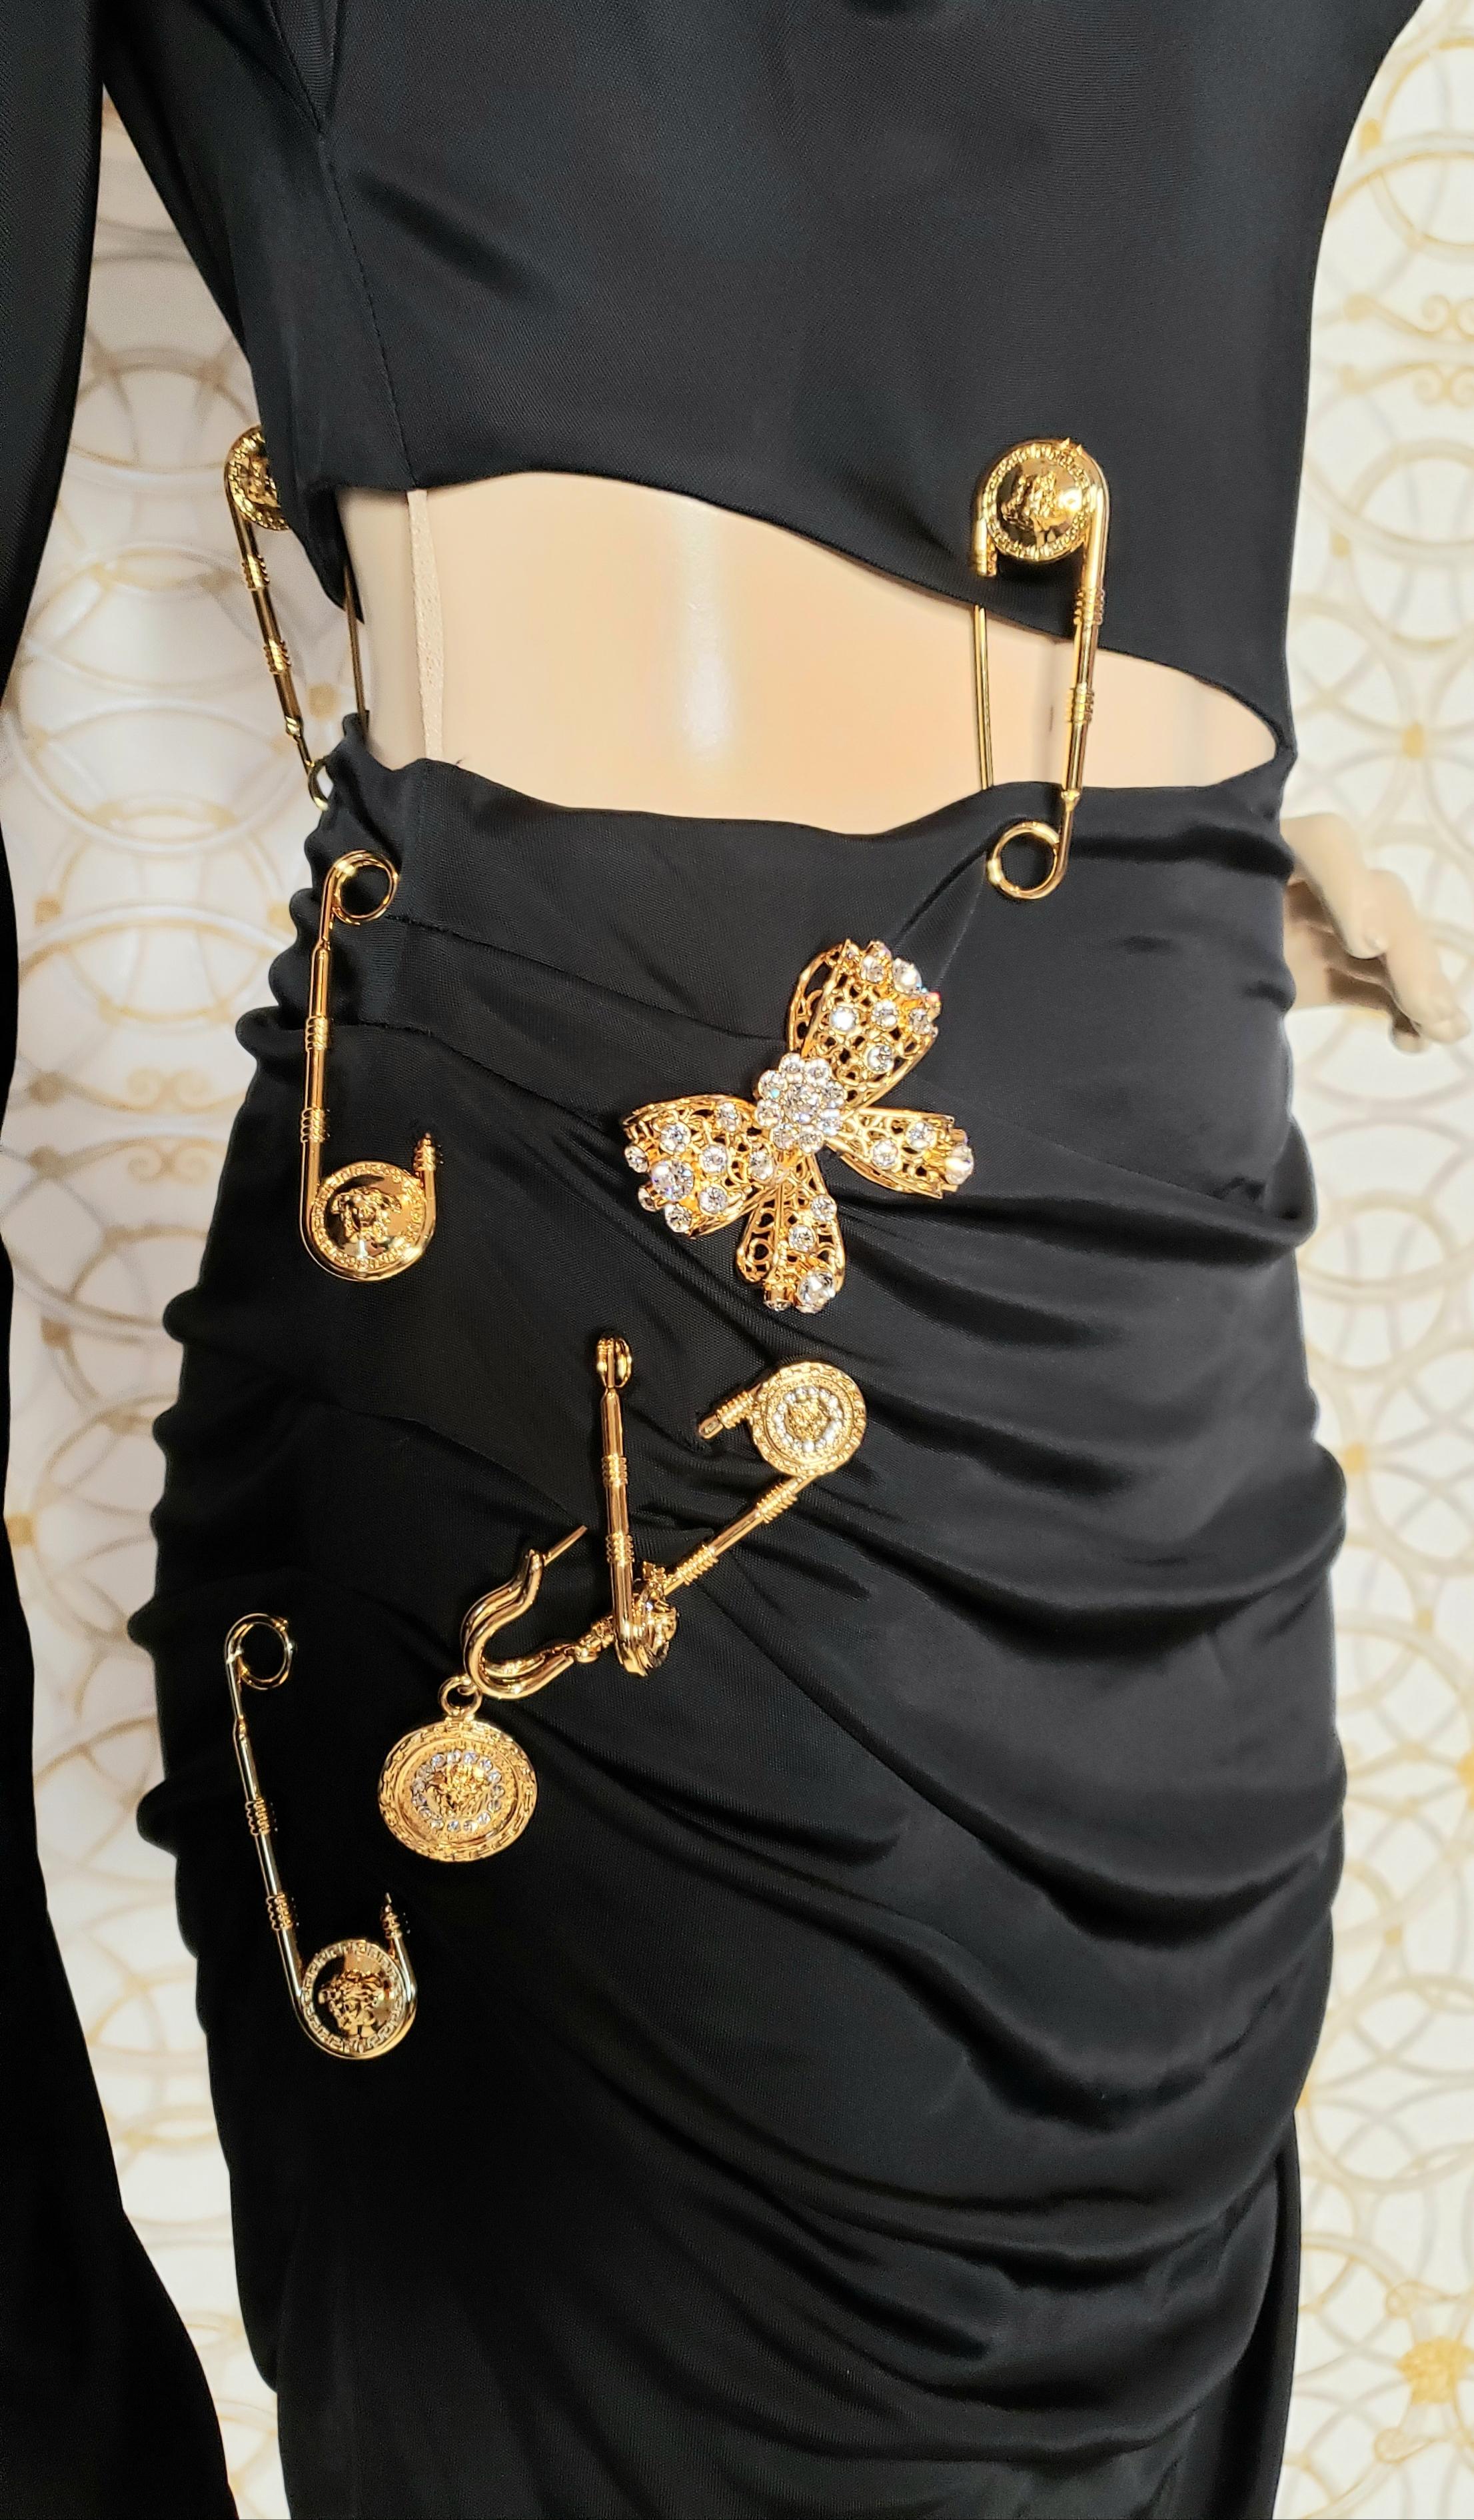  F/2019 look # 26 BLACK PIN UP KNIT COCKTAIL MINI Dress, IT 40 - US 4 - 6 3